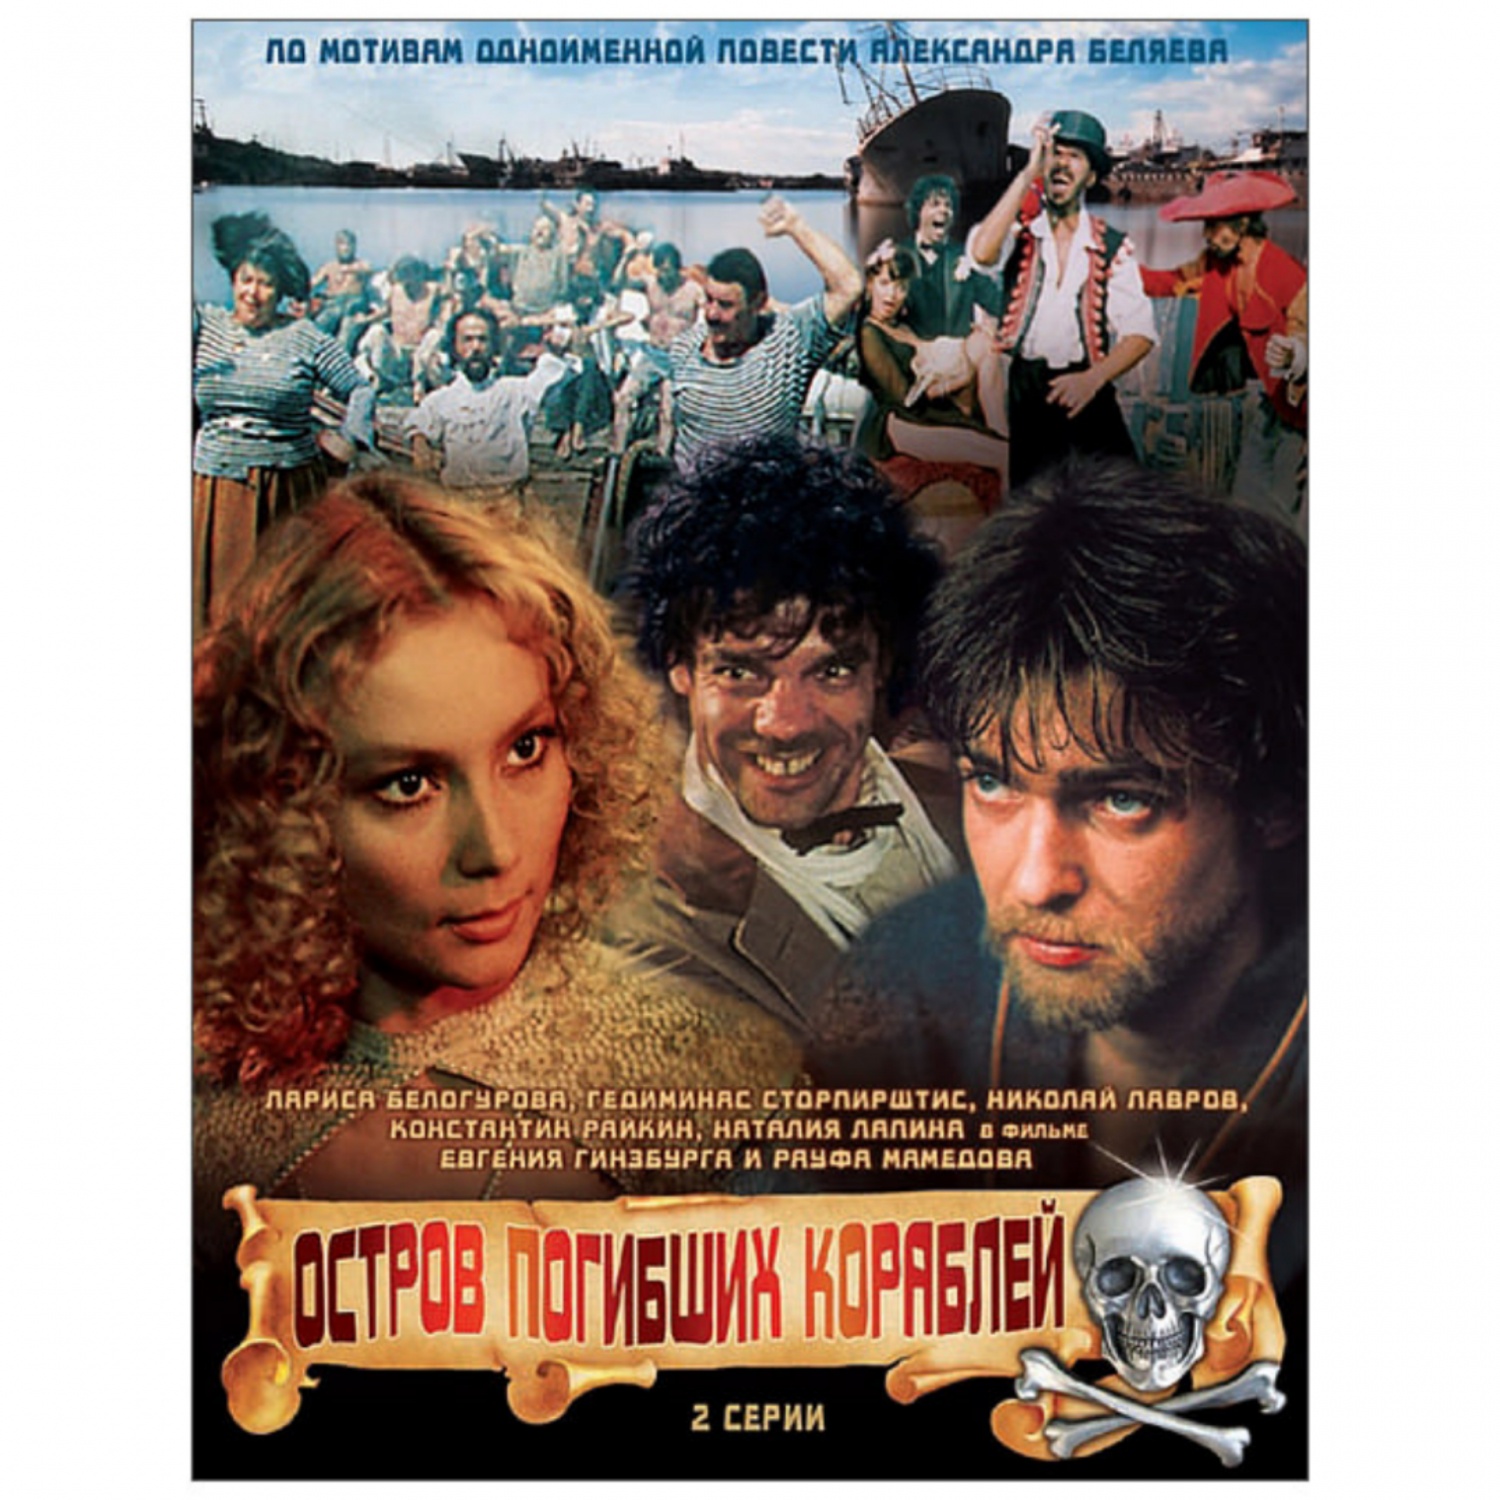 Остров погибших кораблей (1987, фильм) - «Фильм моего детства. Один из  любимых советских фильмов. Буду пересматривать ещё 🎞️» | отзывы